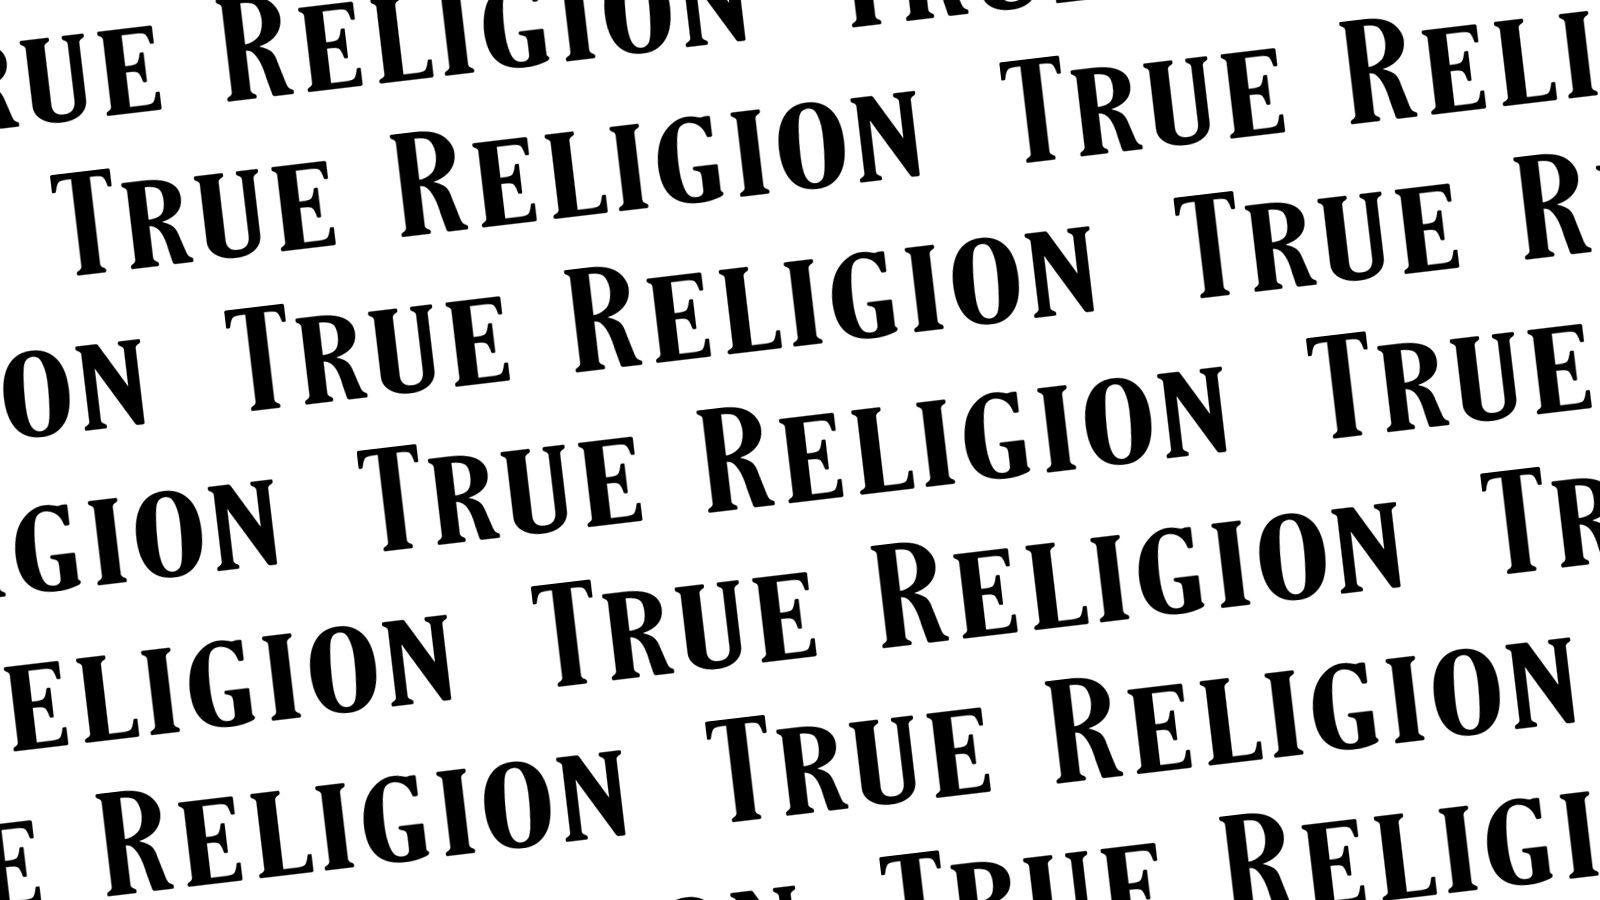 True Religion Logo Wallpaper